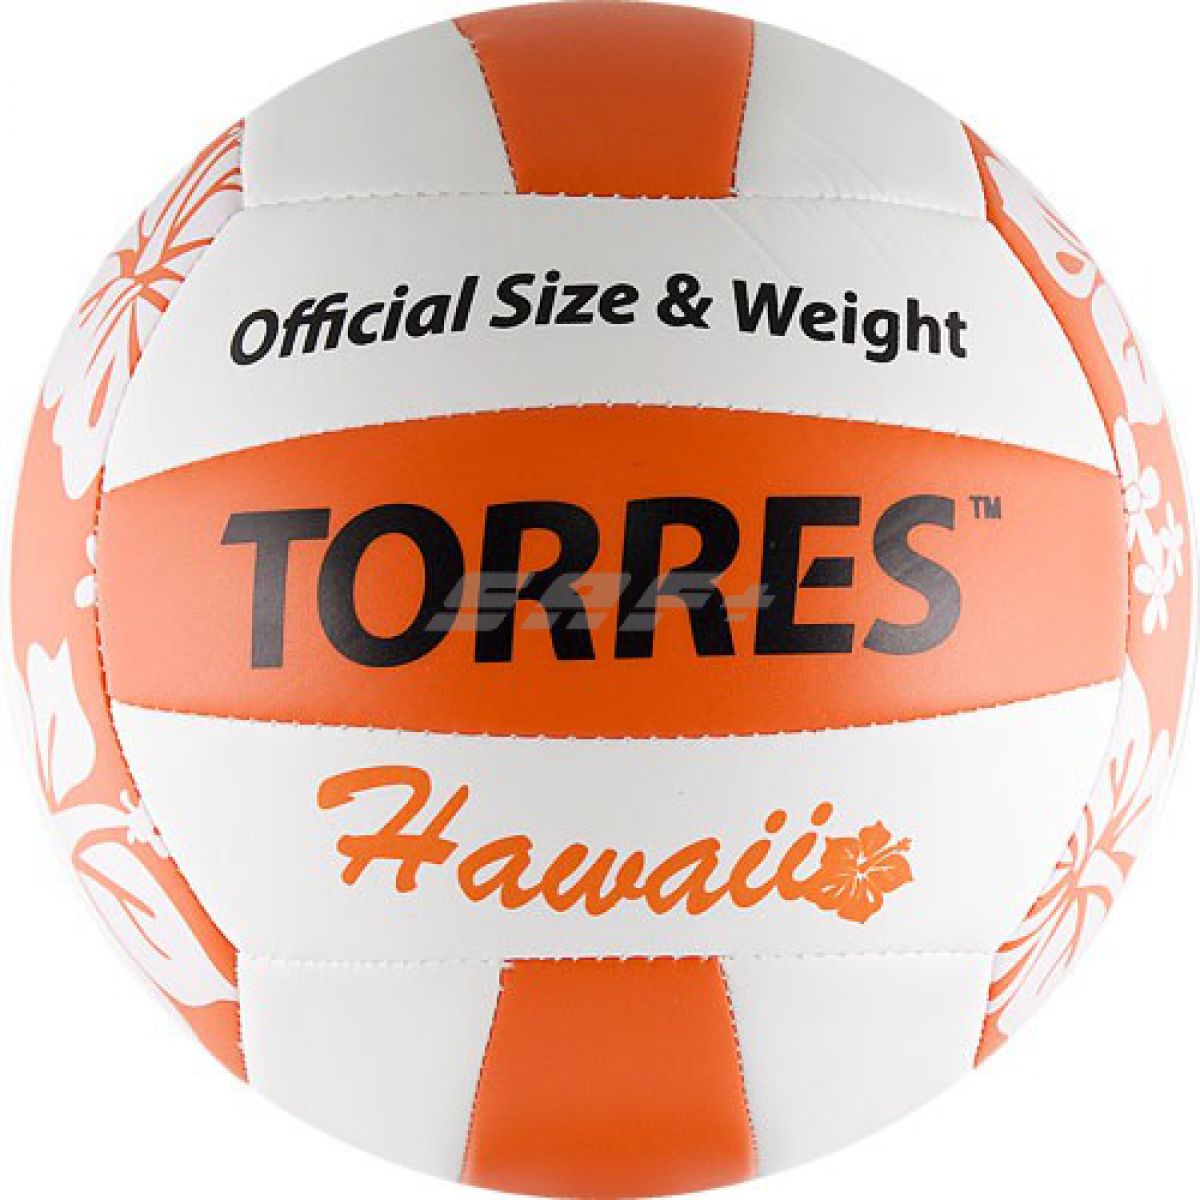 Мяч для пляжного волейбола TORRES Hawaii